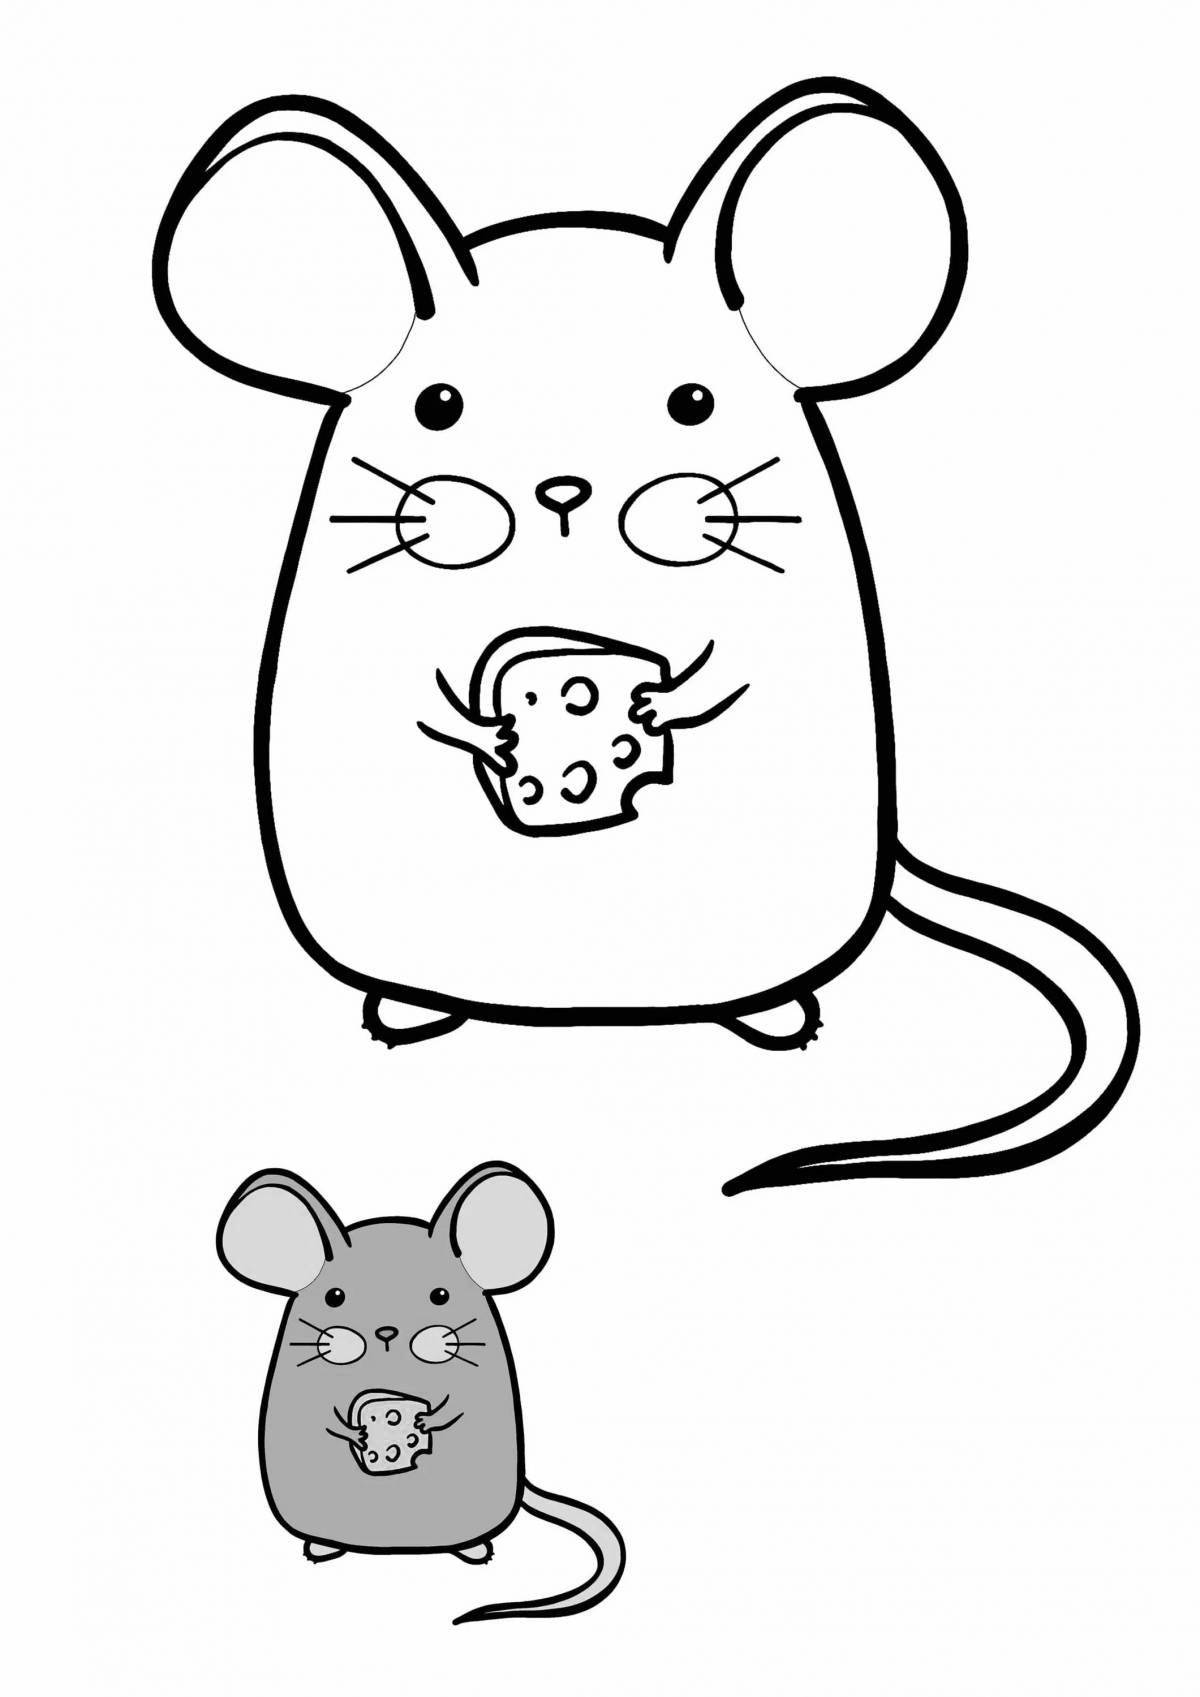 Радиантная раскраска мышь для детей 2-3 лет